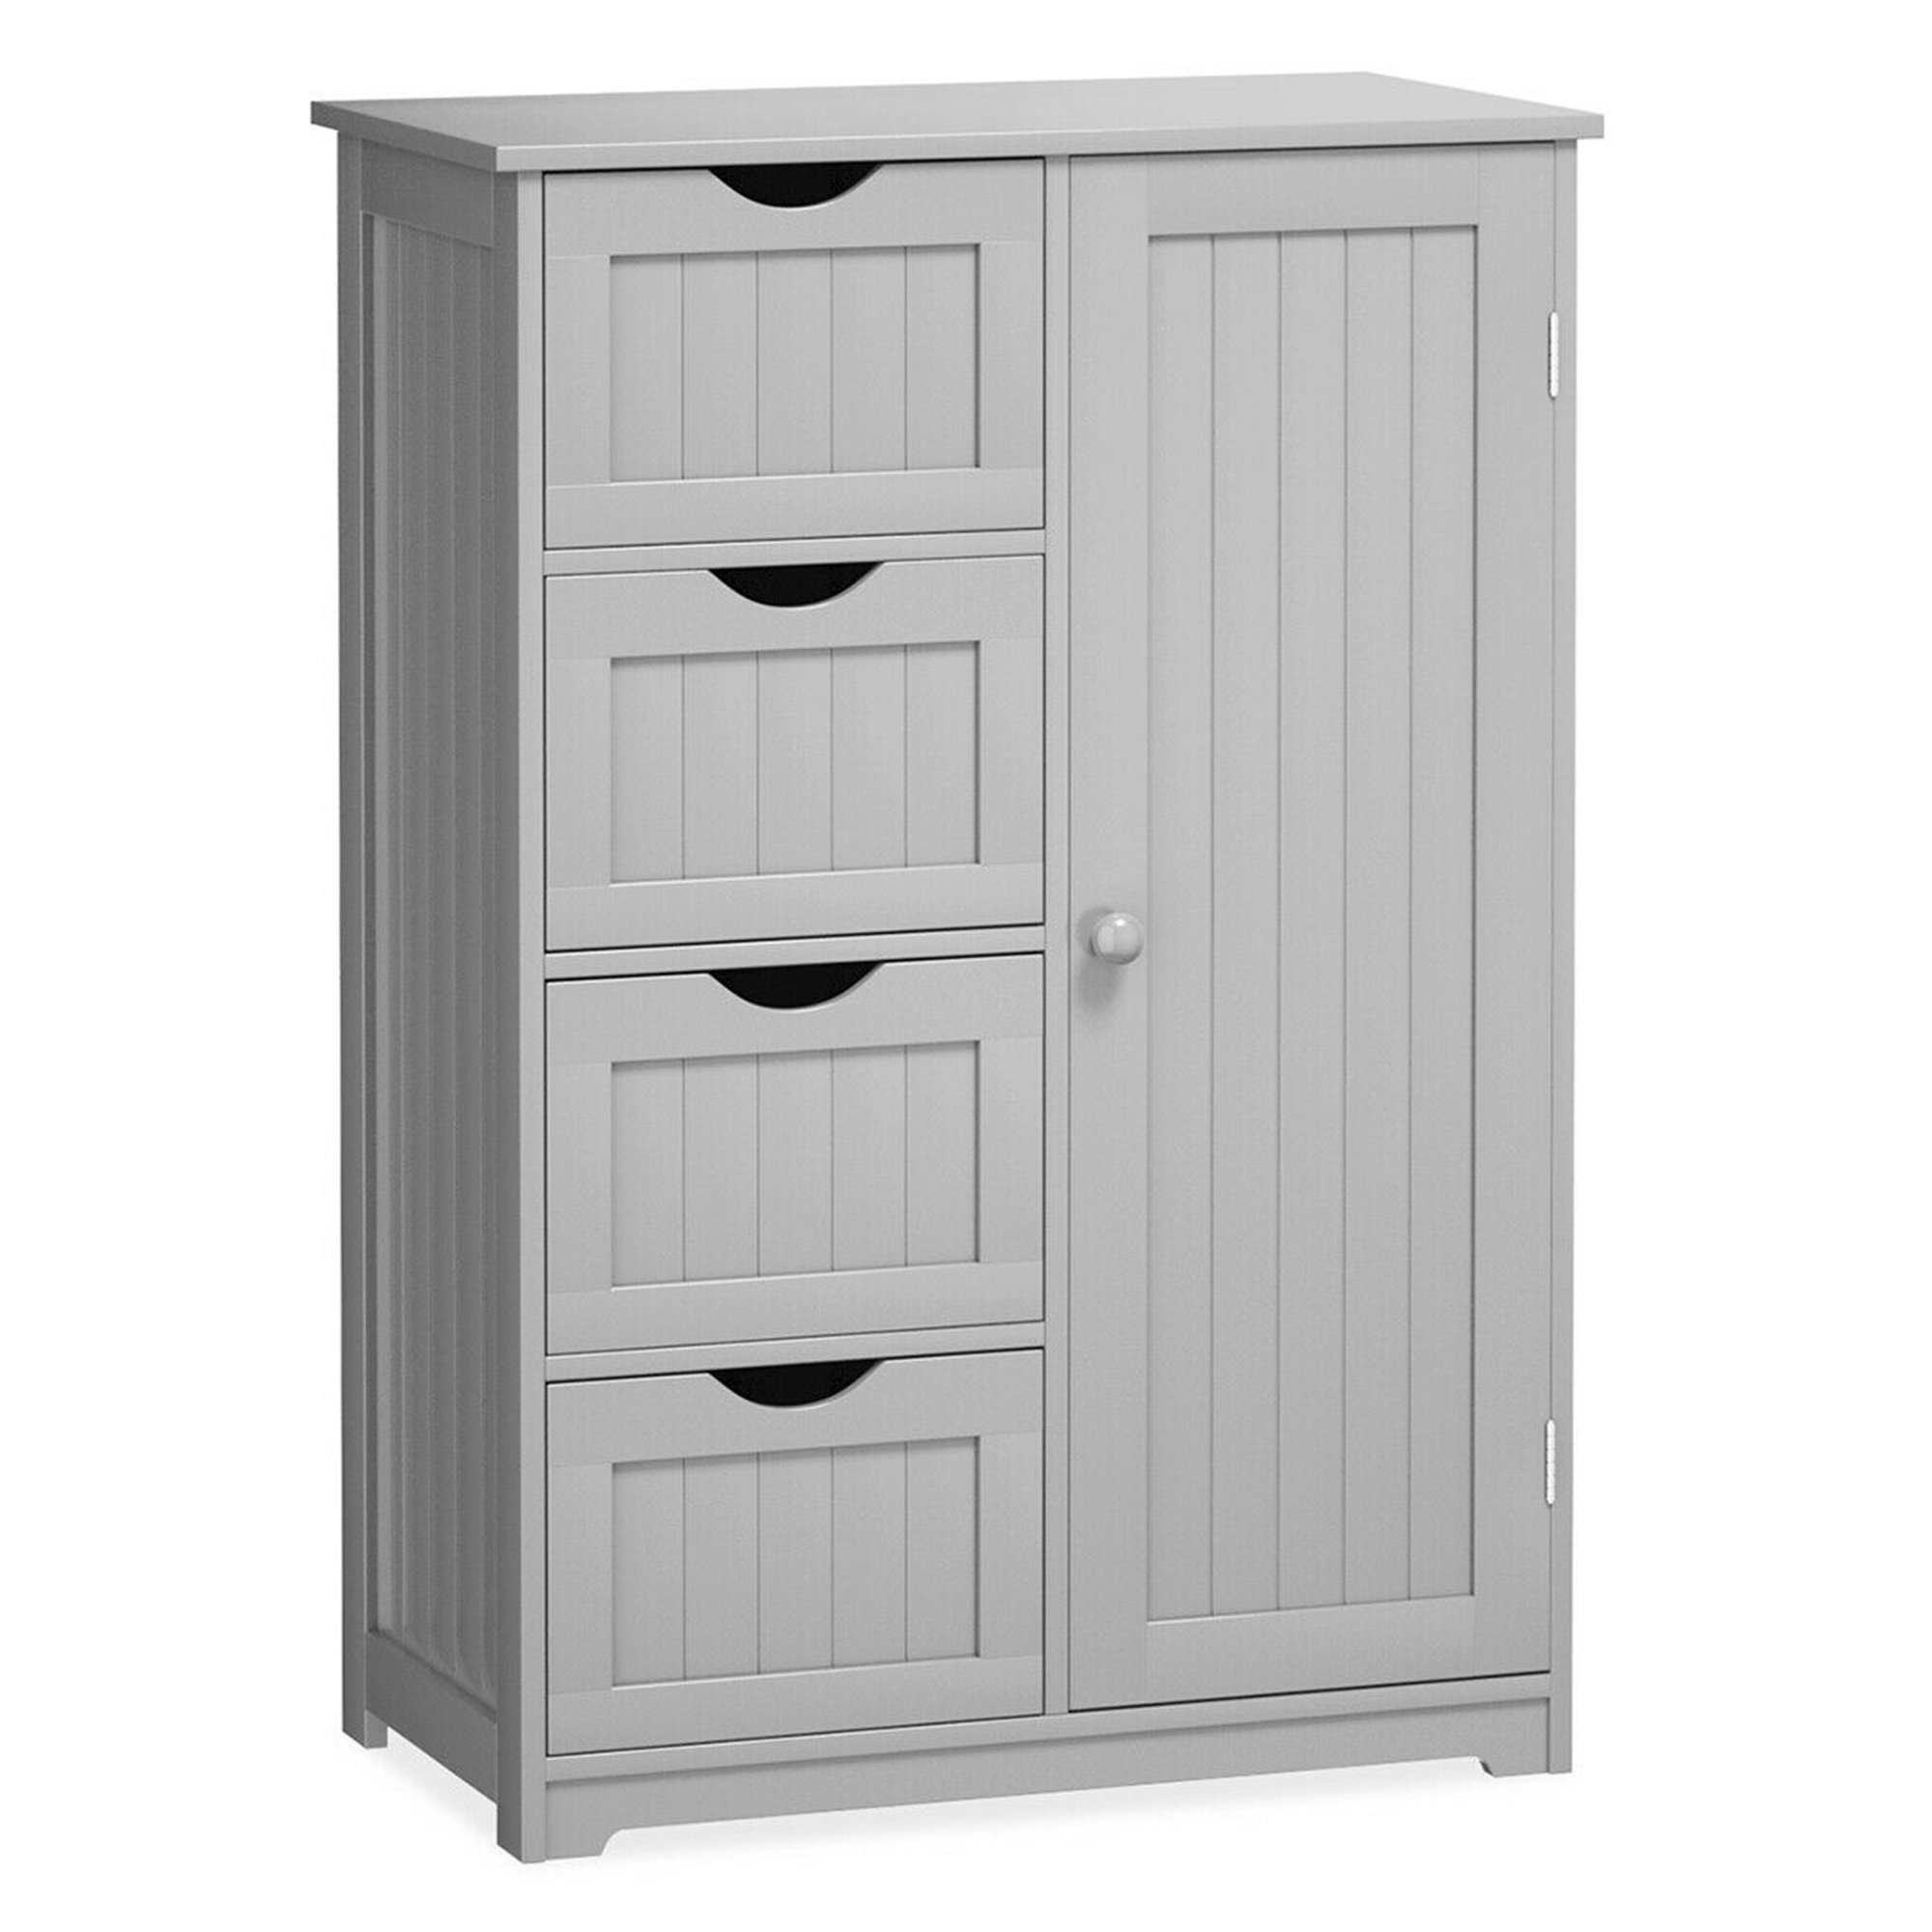 Gymax Bathroom Floor Cabinet Storage Organizer Cupboard w/ 4 Drawers Adjustable Shelf Grey - image 1 of 10